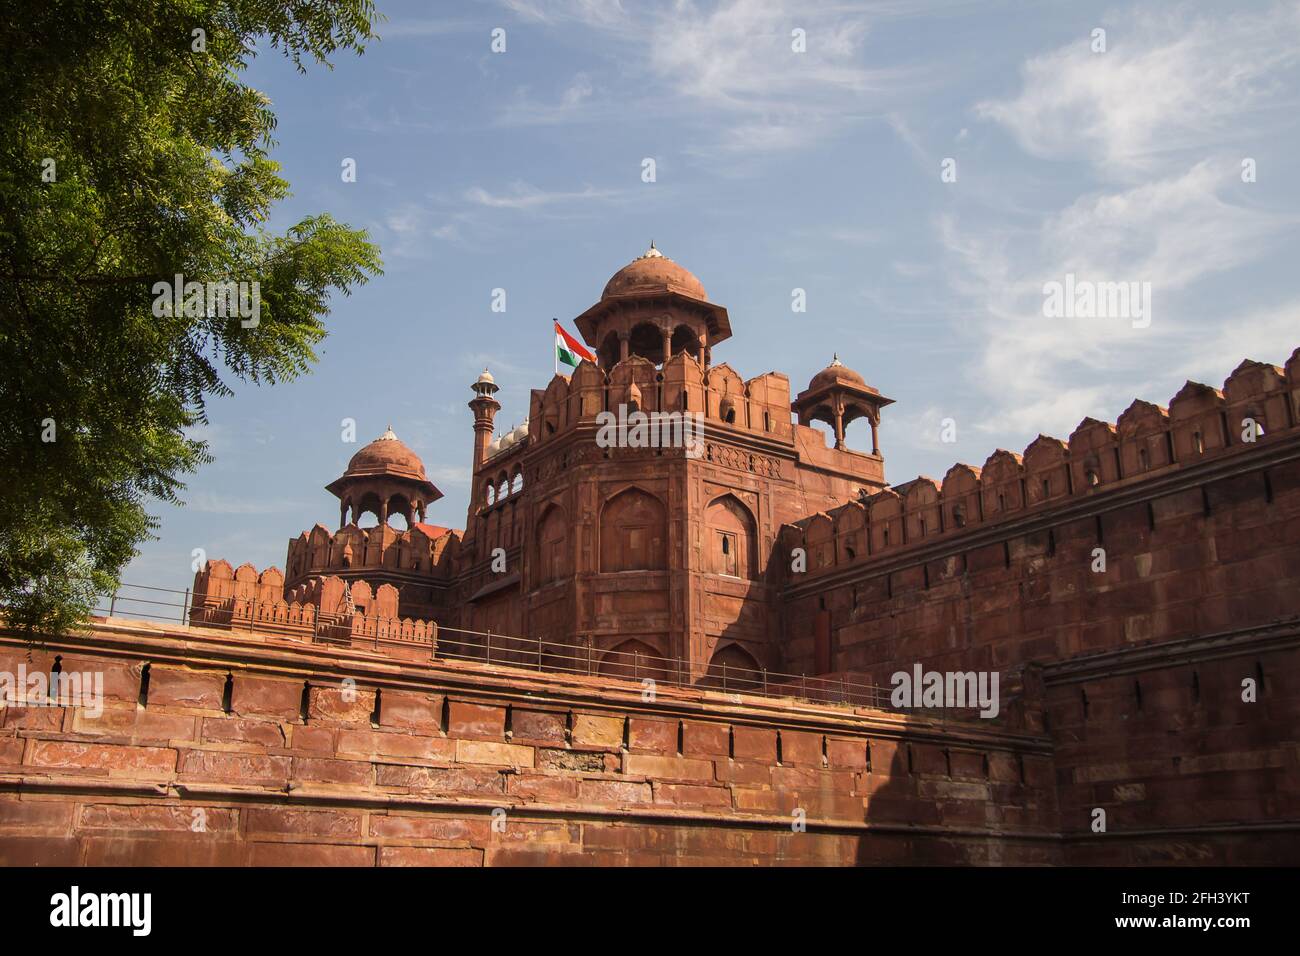 Haupttor des Roten Fort in Alt-Delhi, Indien. Es befindet sich in der Hauptstadt Neu-Delhi im älteren Teil der Stadt. Stockfoto